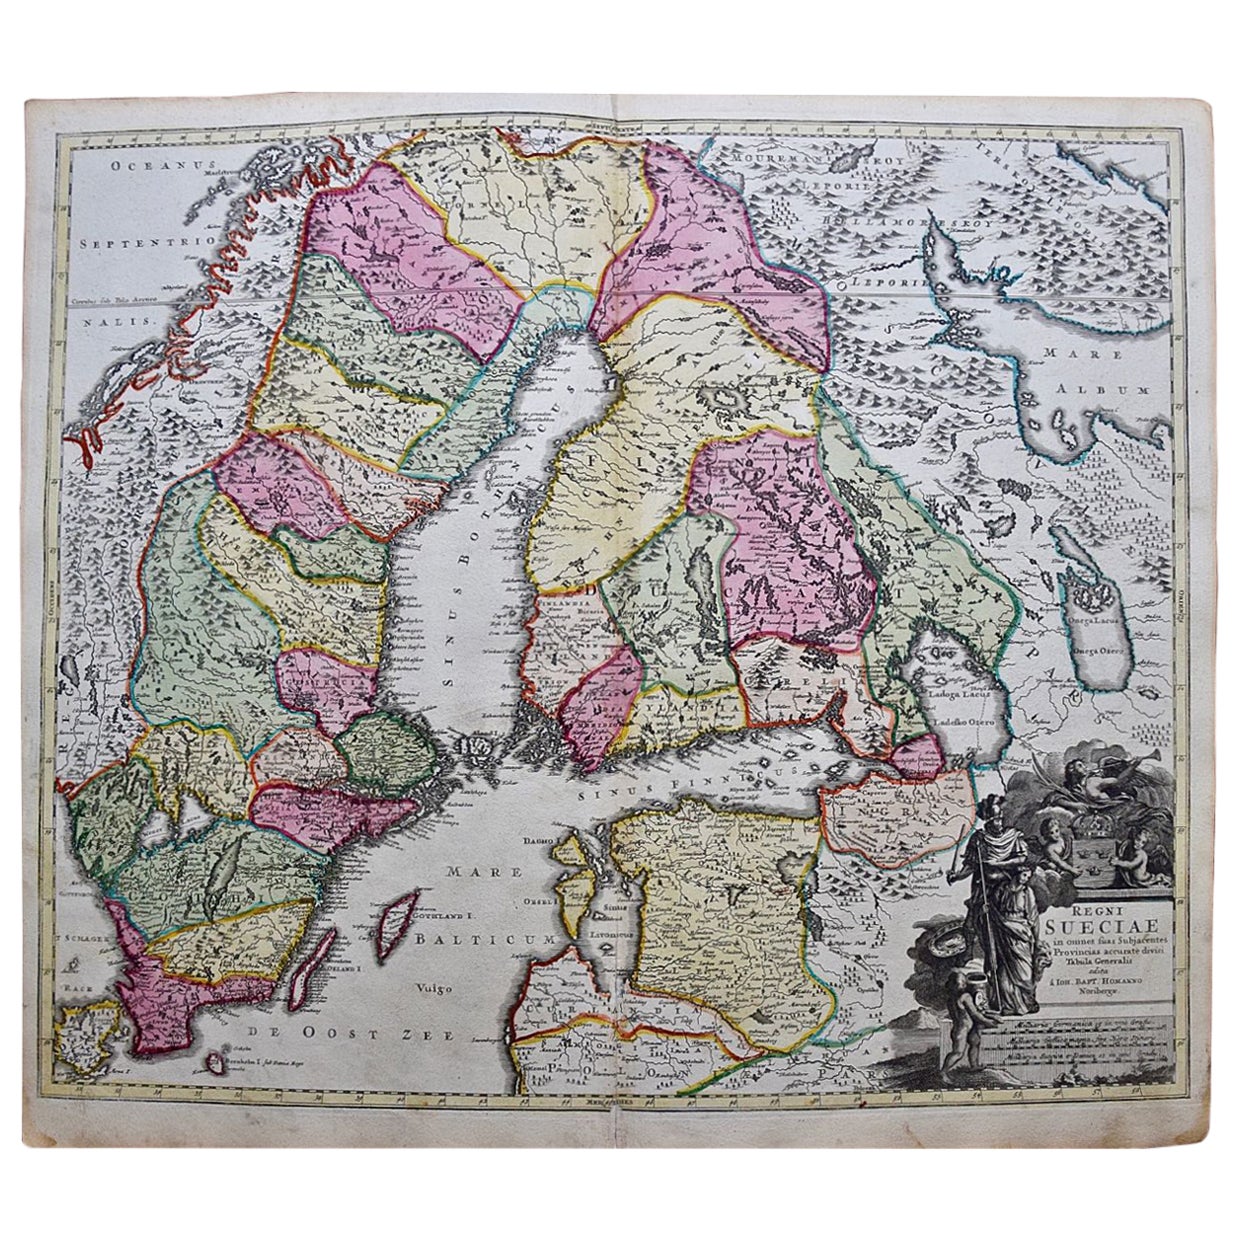 Scandinavie & Portions of Eastern Europe : Carte Homann du 18e siècle colorée à la main